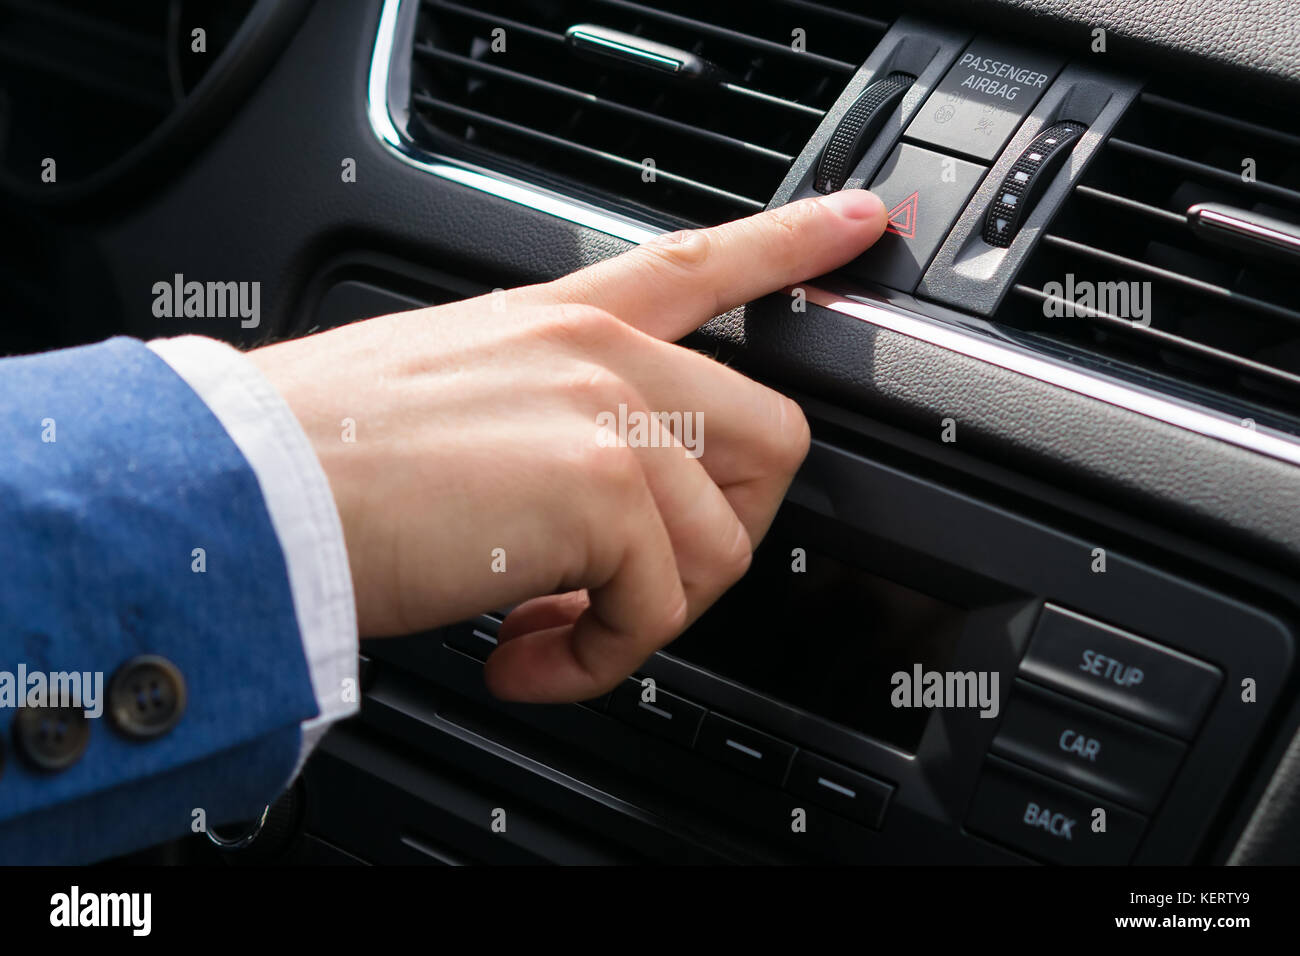 El dedo de una mano humana presiona el botón de iluminación de emergencia durante la conducción, evitando el peligro Foto de stock